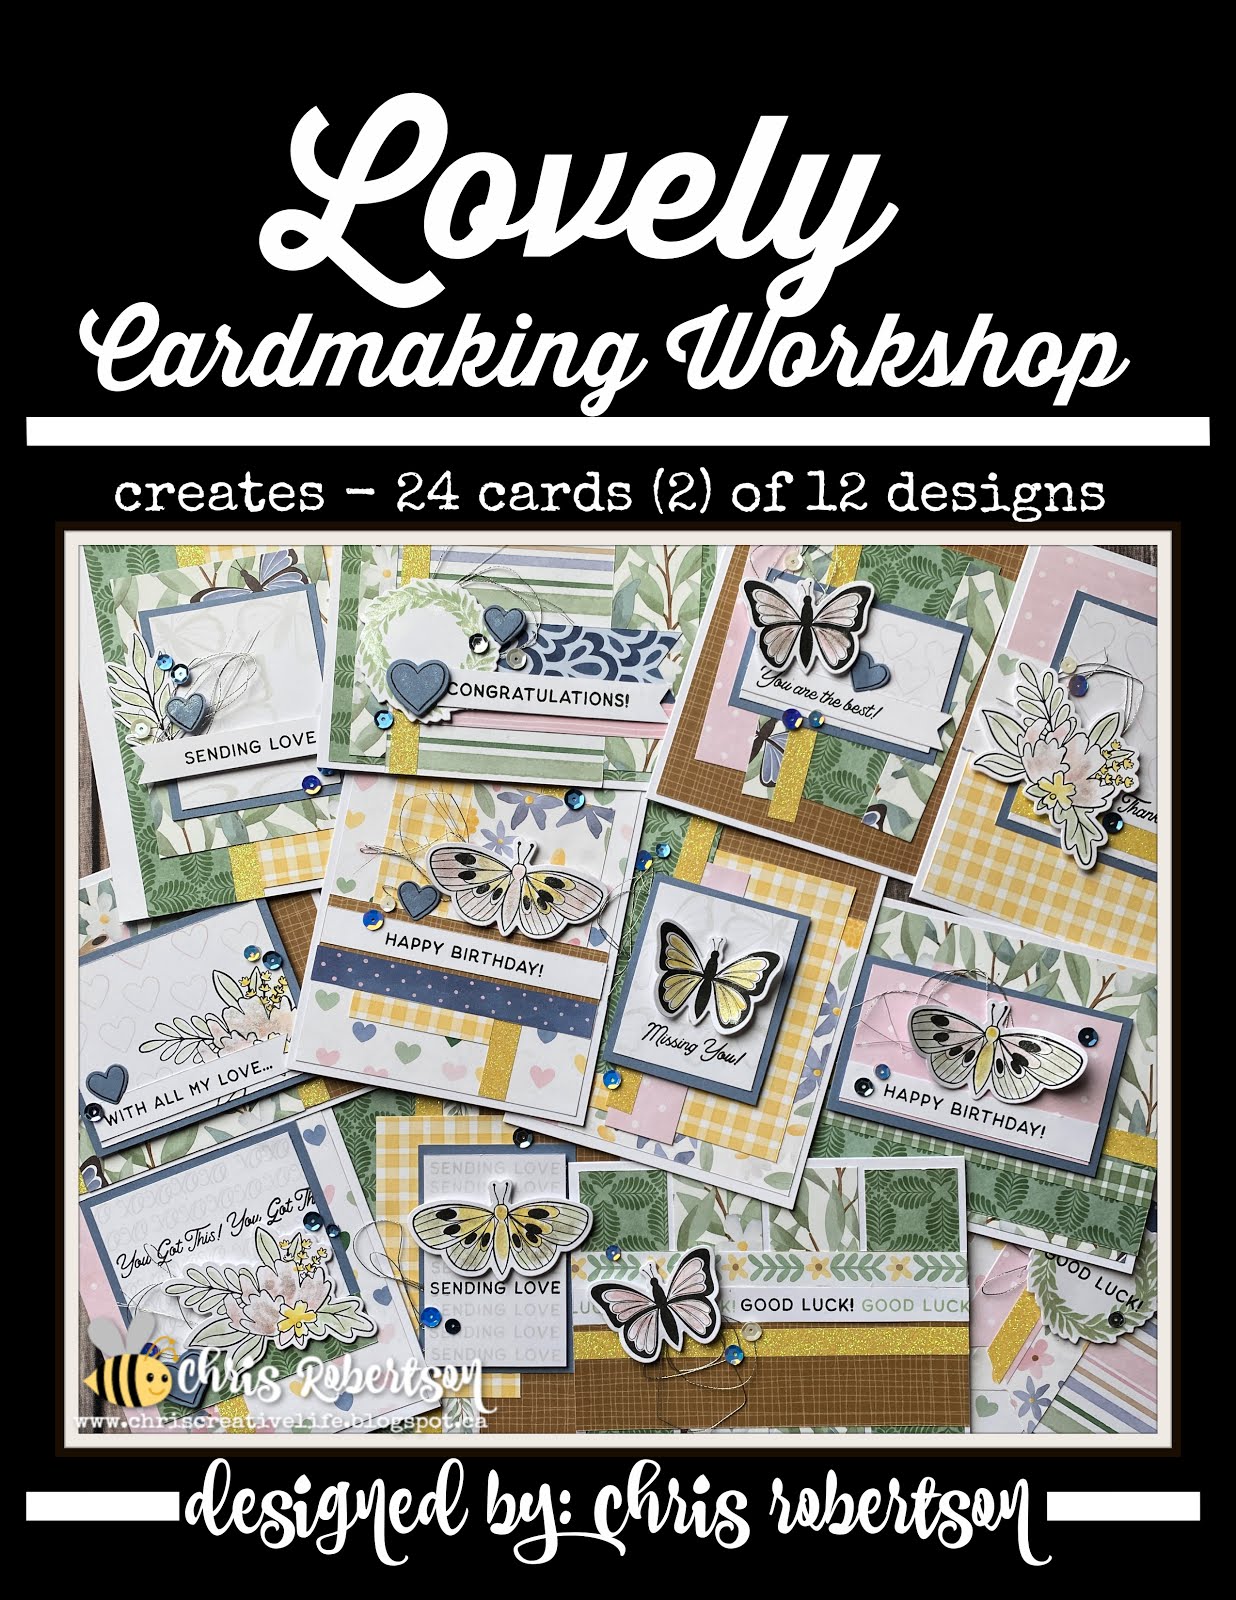 Lovely Cardmaking workshop